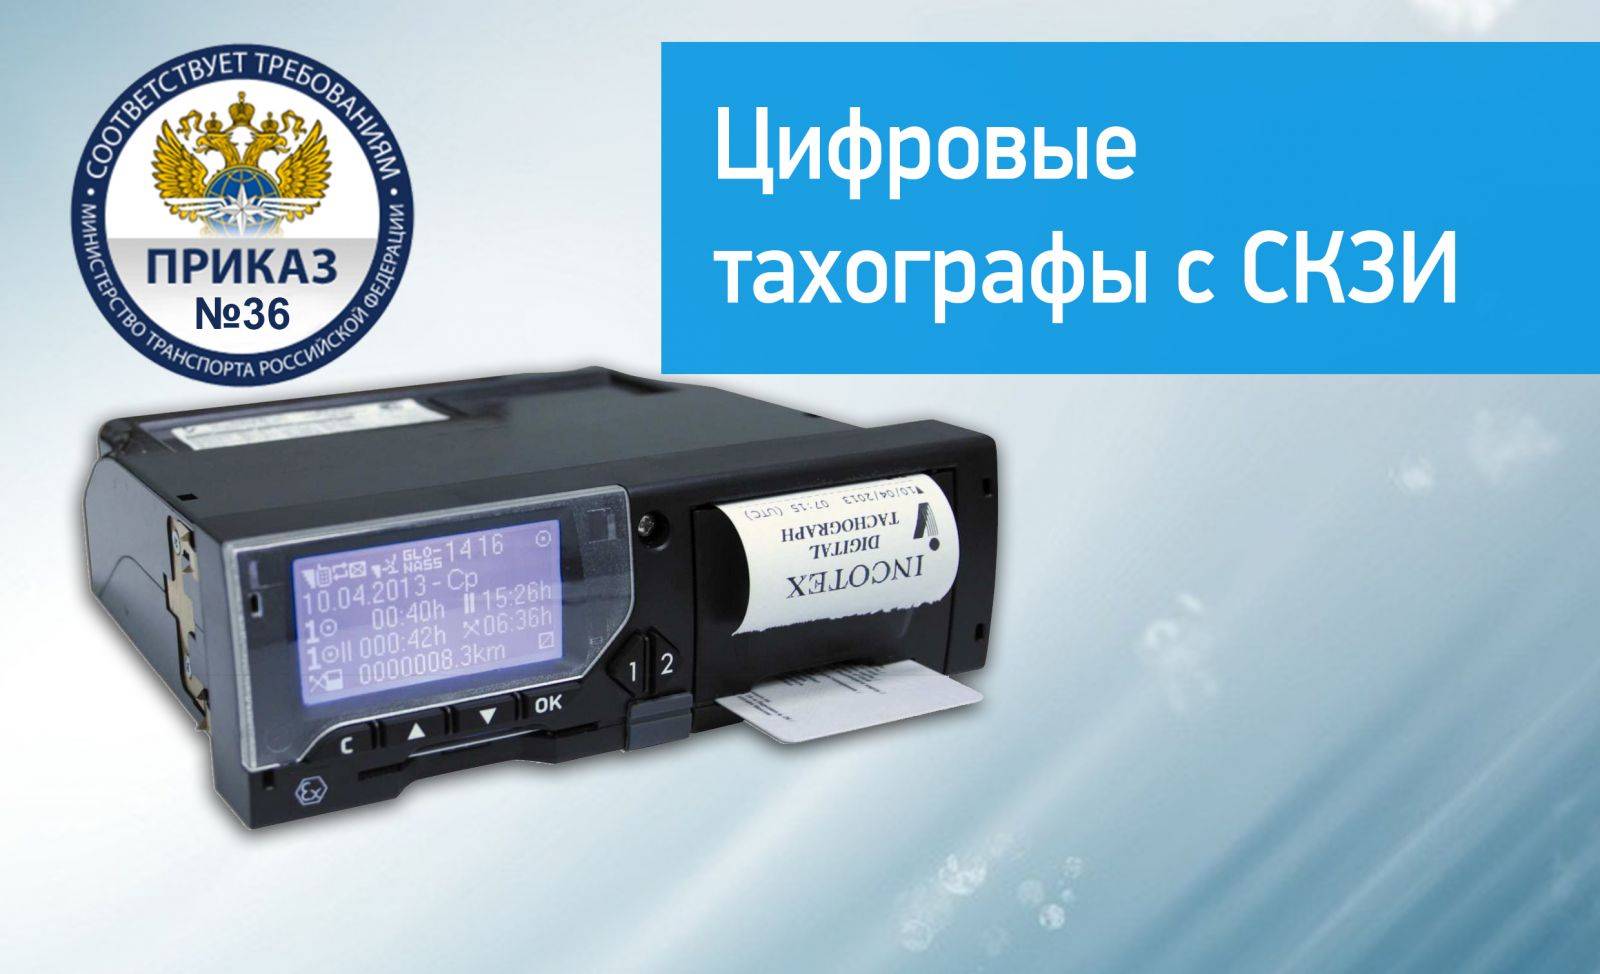 Как получить карту водителя для цифрового тахографа в россии? правила оформления.